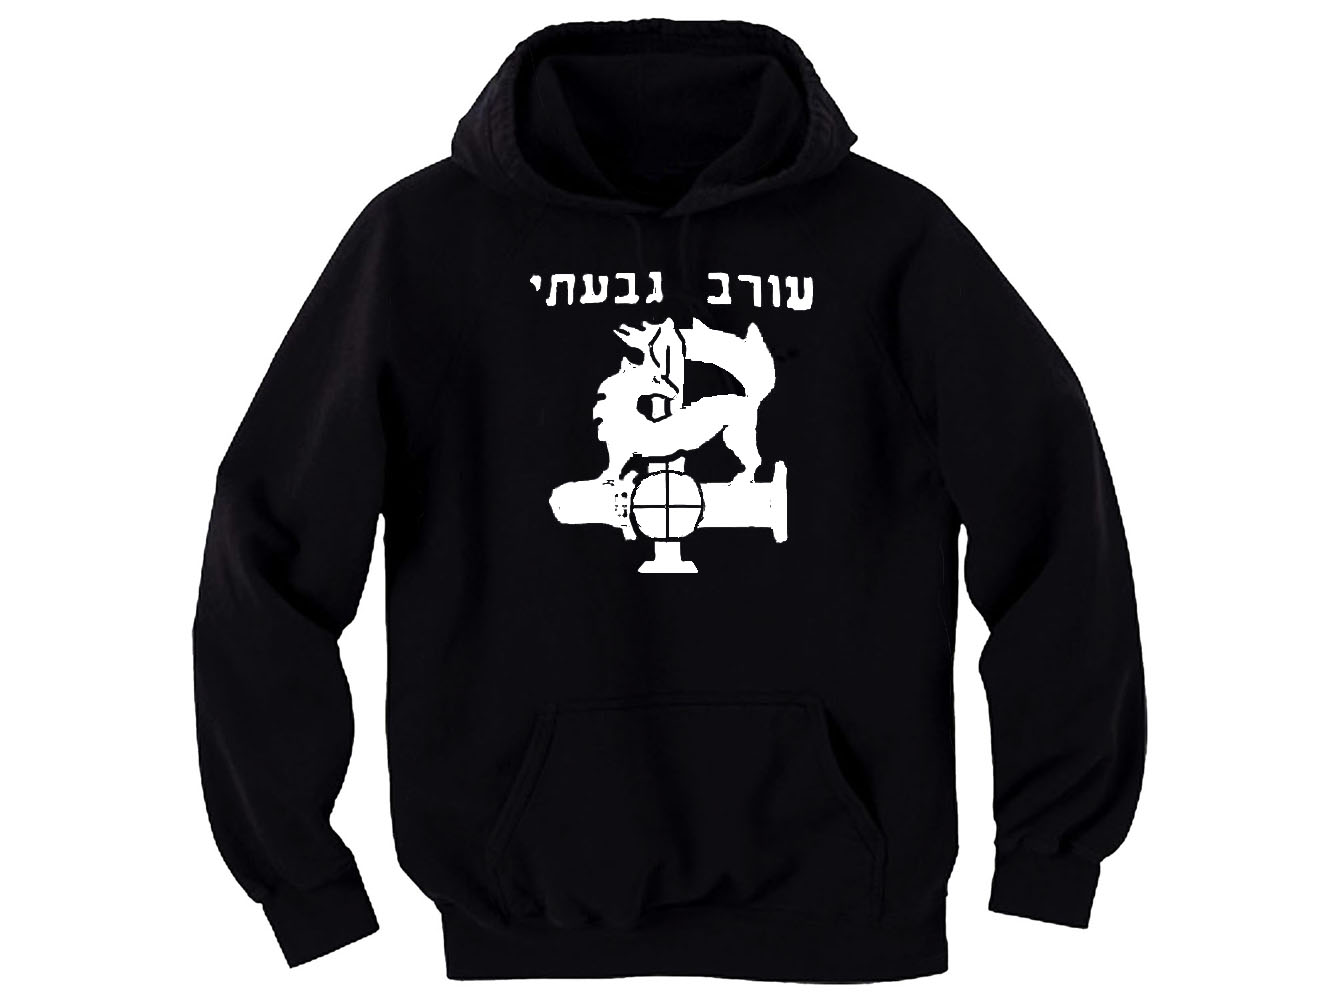 Givati Brigade IDF Israel army Sweatshirt